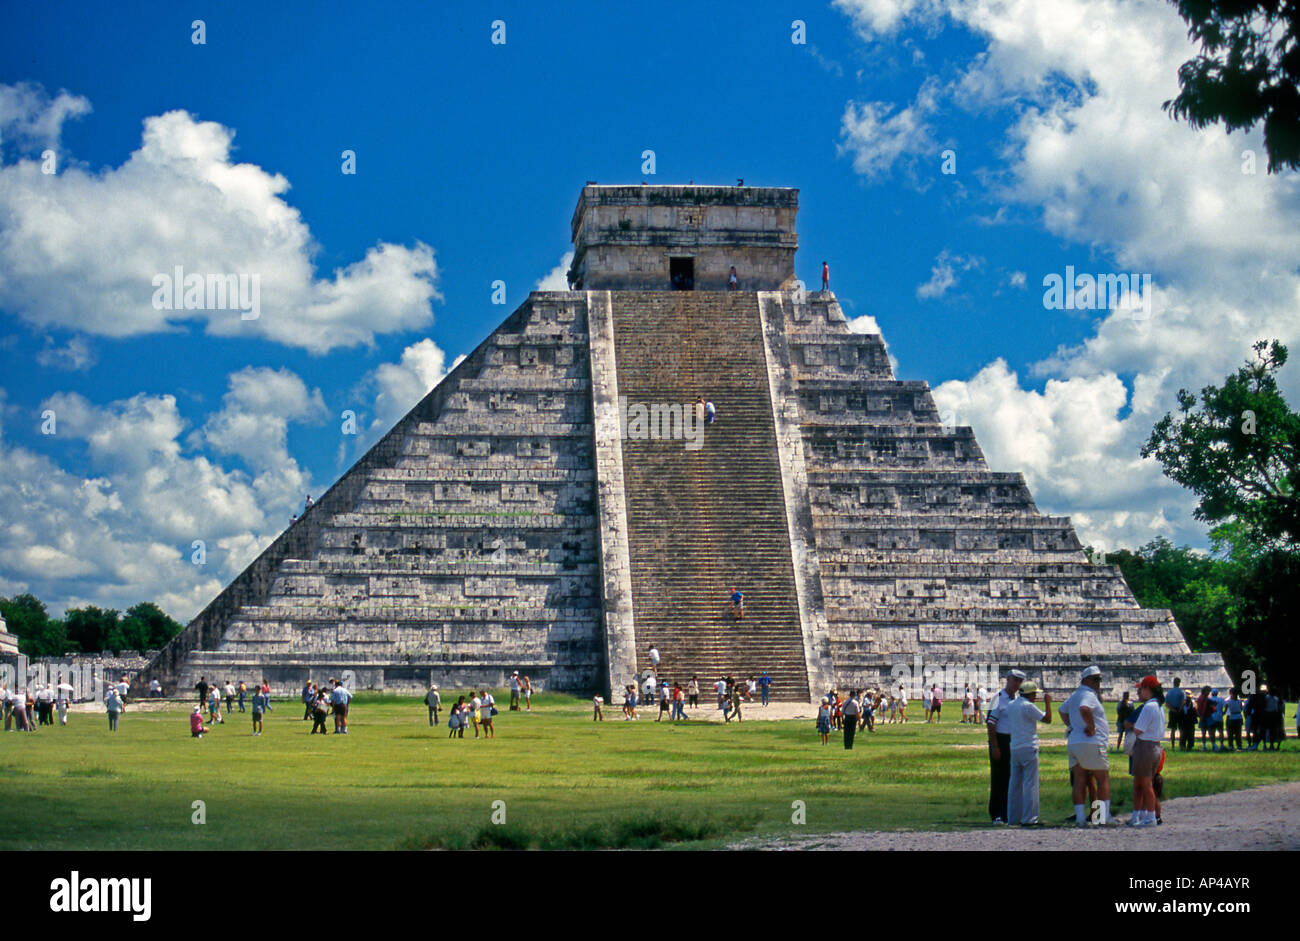 El Castillo Pyramide des Kukulcan Chichen Itza Yucatan Mexiko Stockfoto